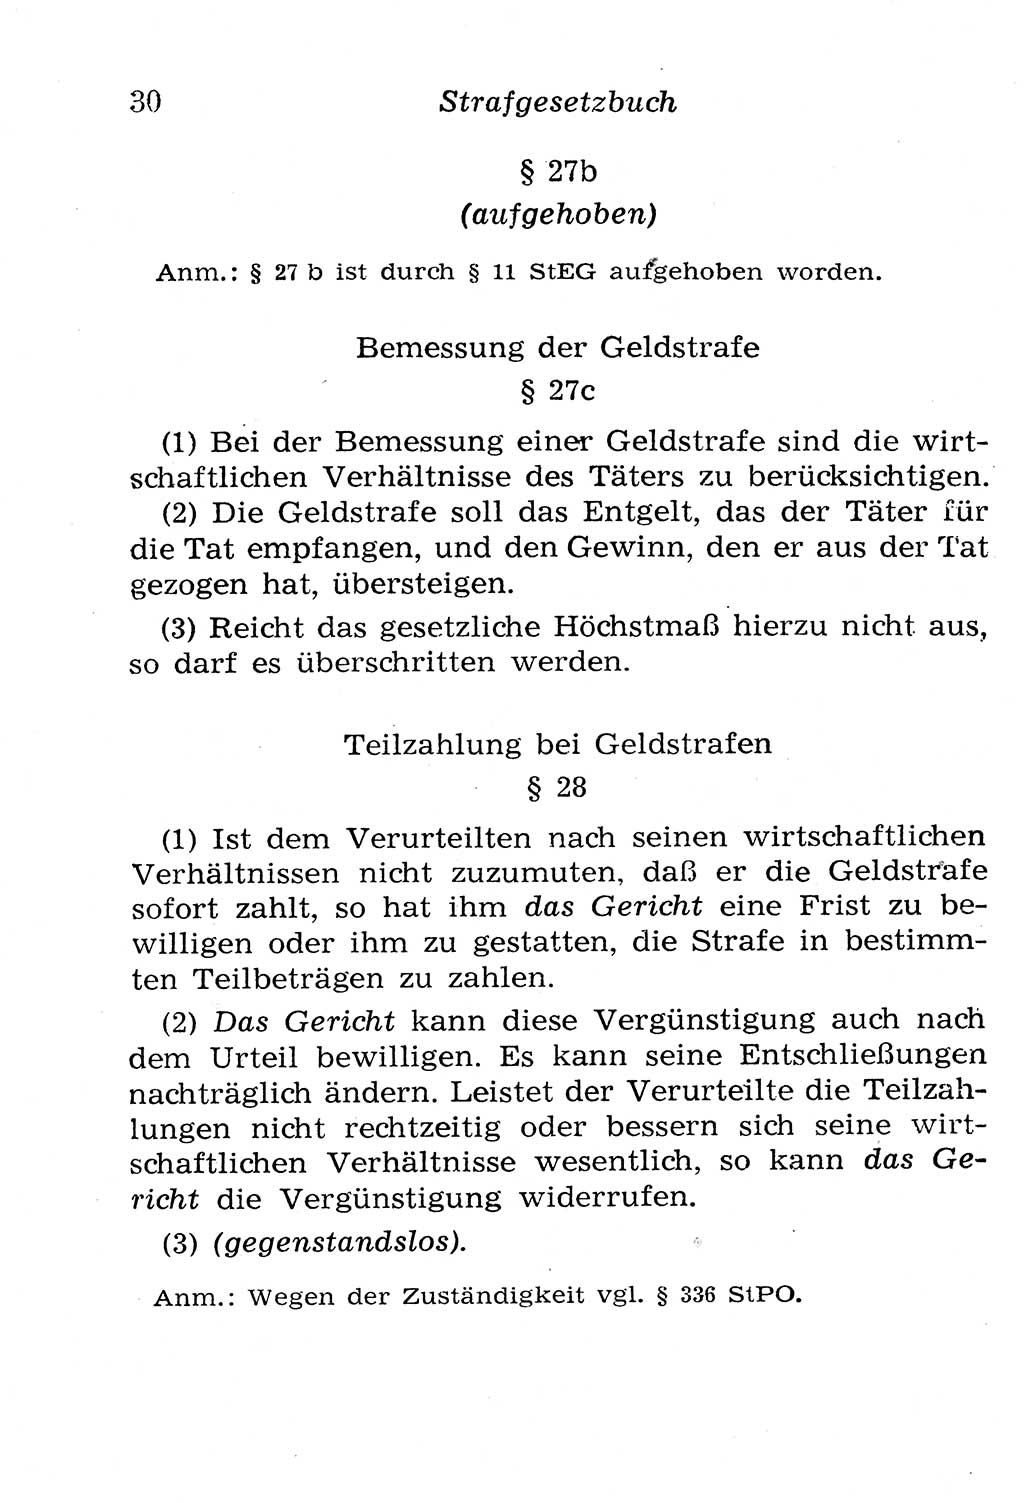 Strafgesetzbuch (StGB) und andere Strafgesetze [Deutsche Demokratische Republik (DDR)] 1958, Seite 30 (StGB Strafges. DDR 1958, S. 30)